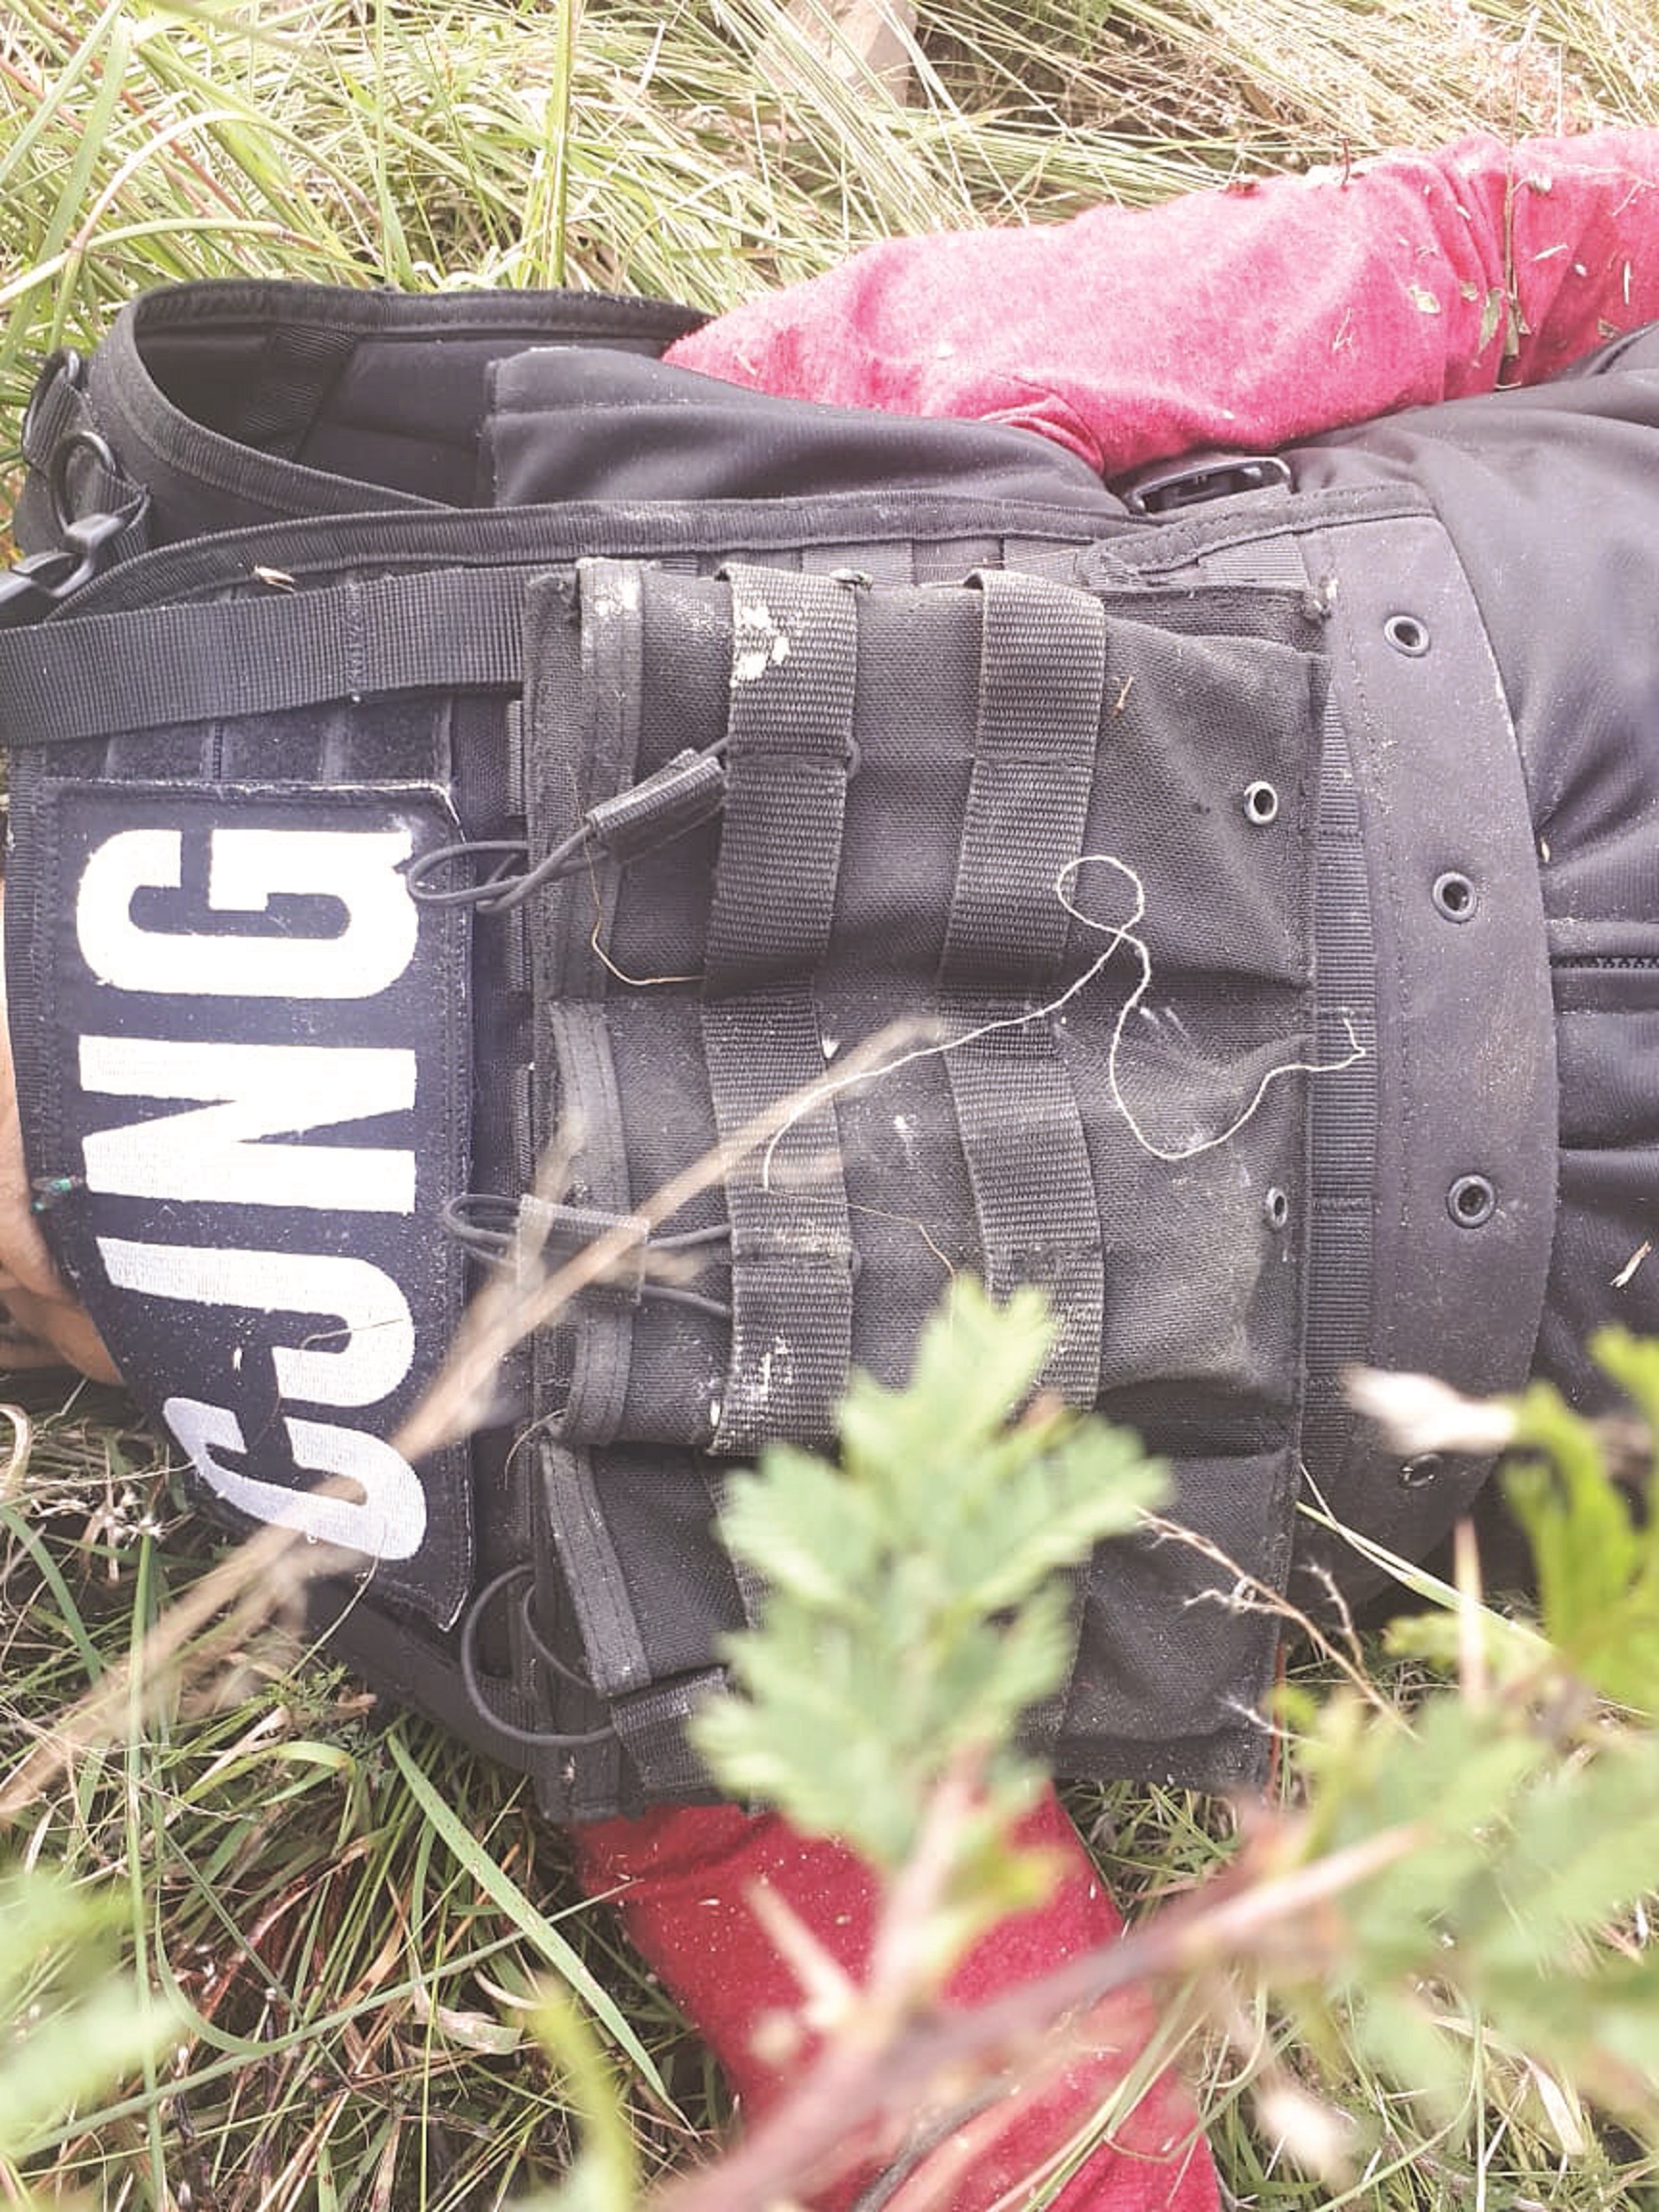 En tres días de nuevo gobierno asesinan a 54 en Guanajuato